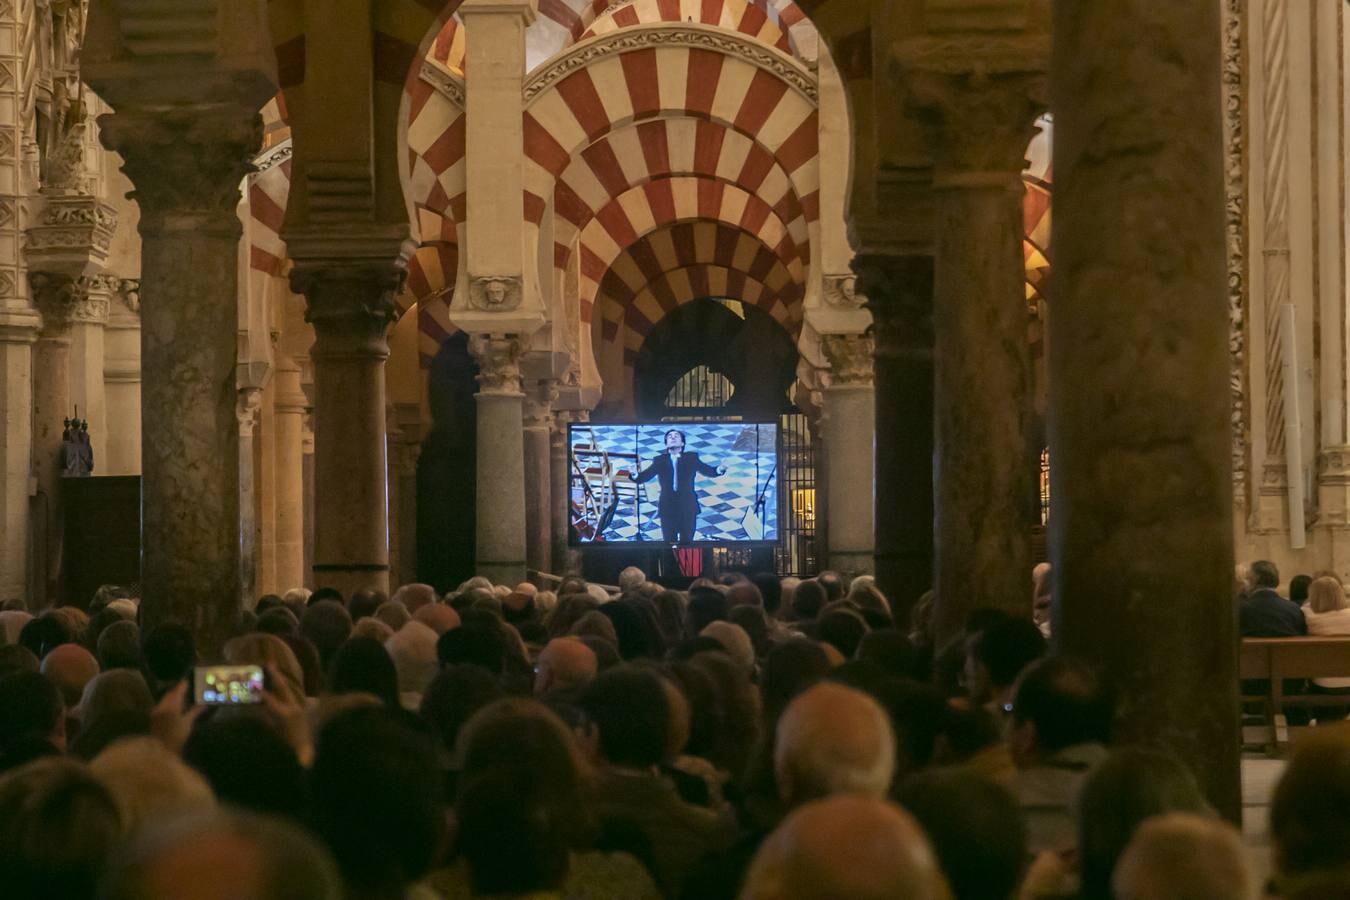 La misa de Réquiem en la Catedral de Córdoba, en imágenes